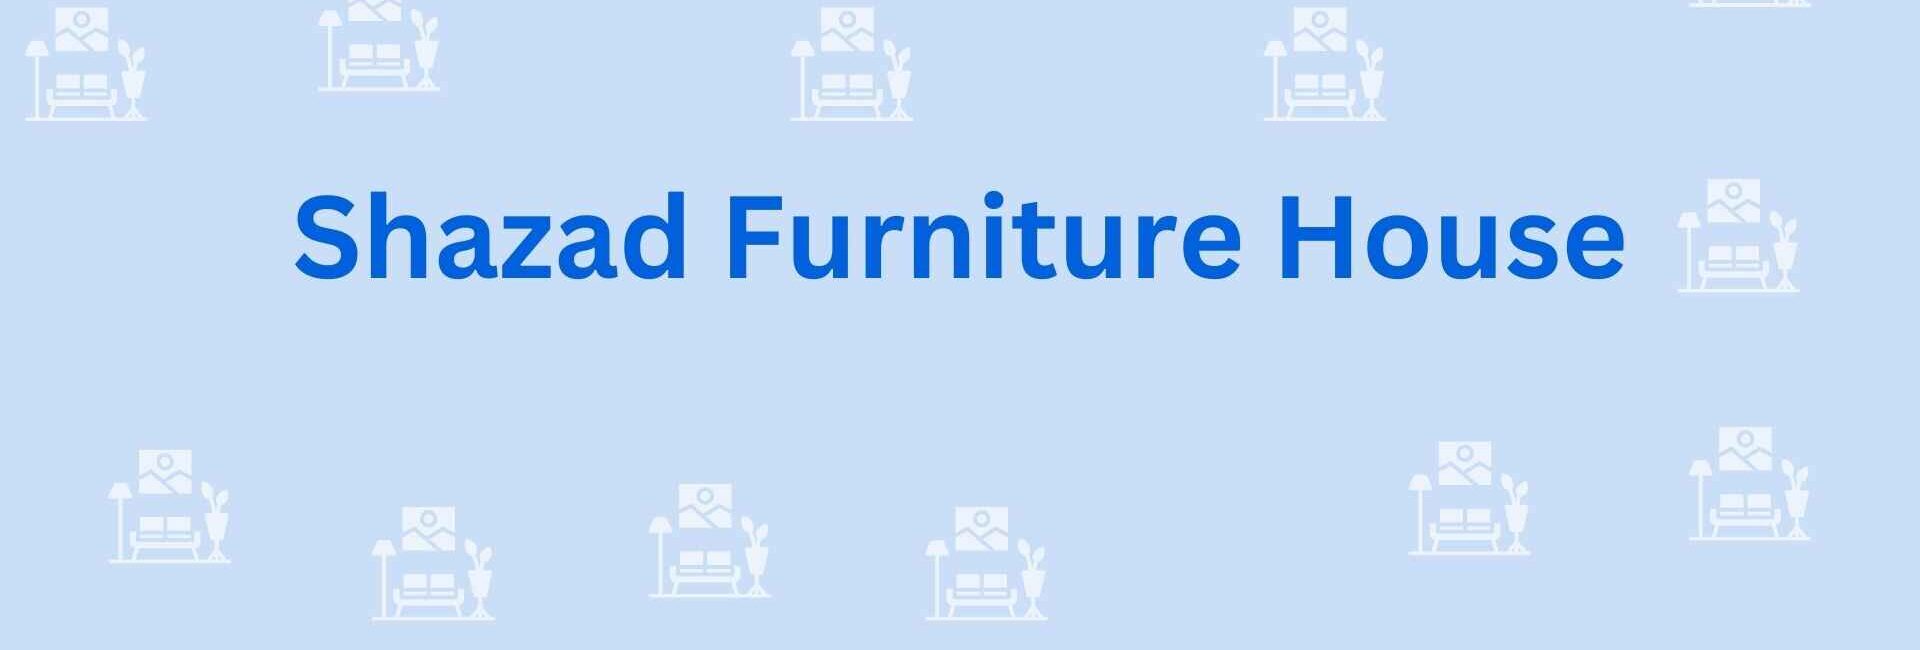 Shazad Furniture House - Furniture Dealer in Noida